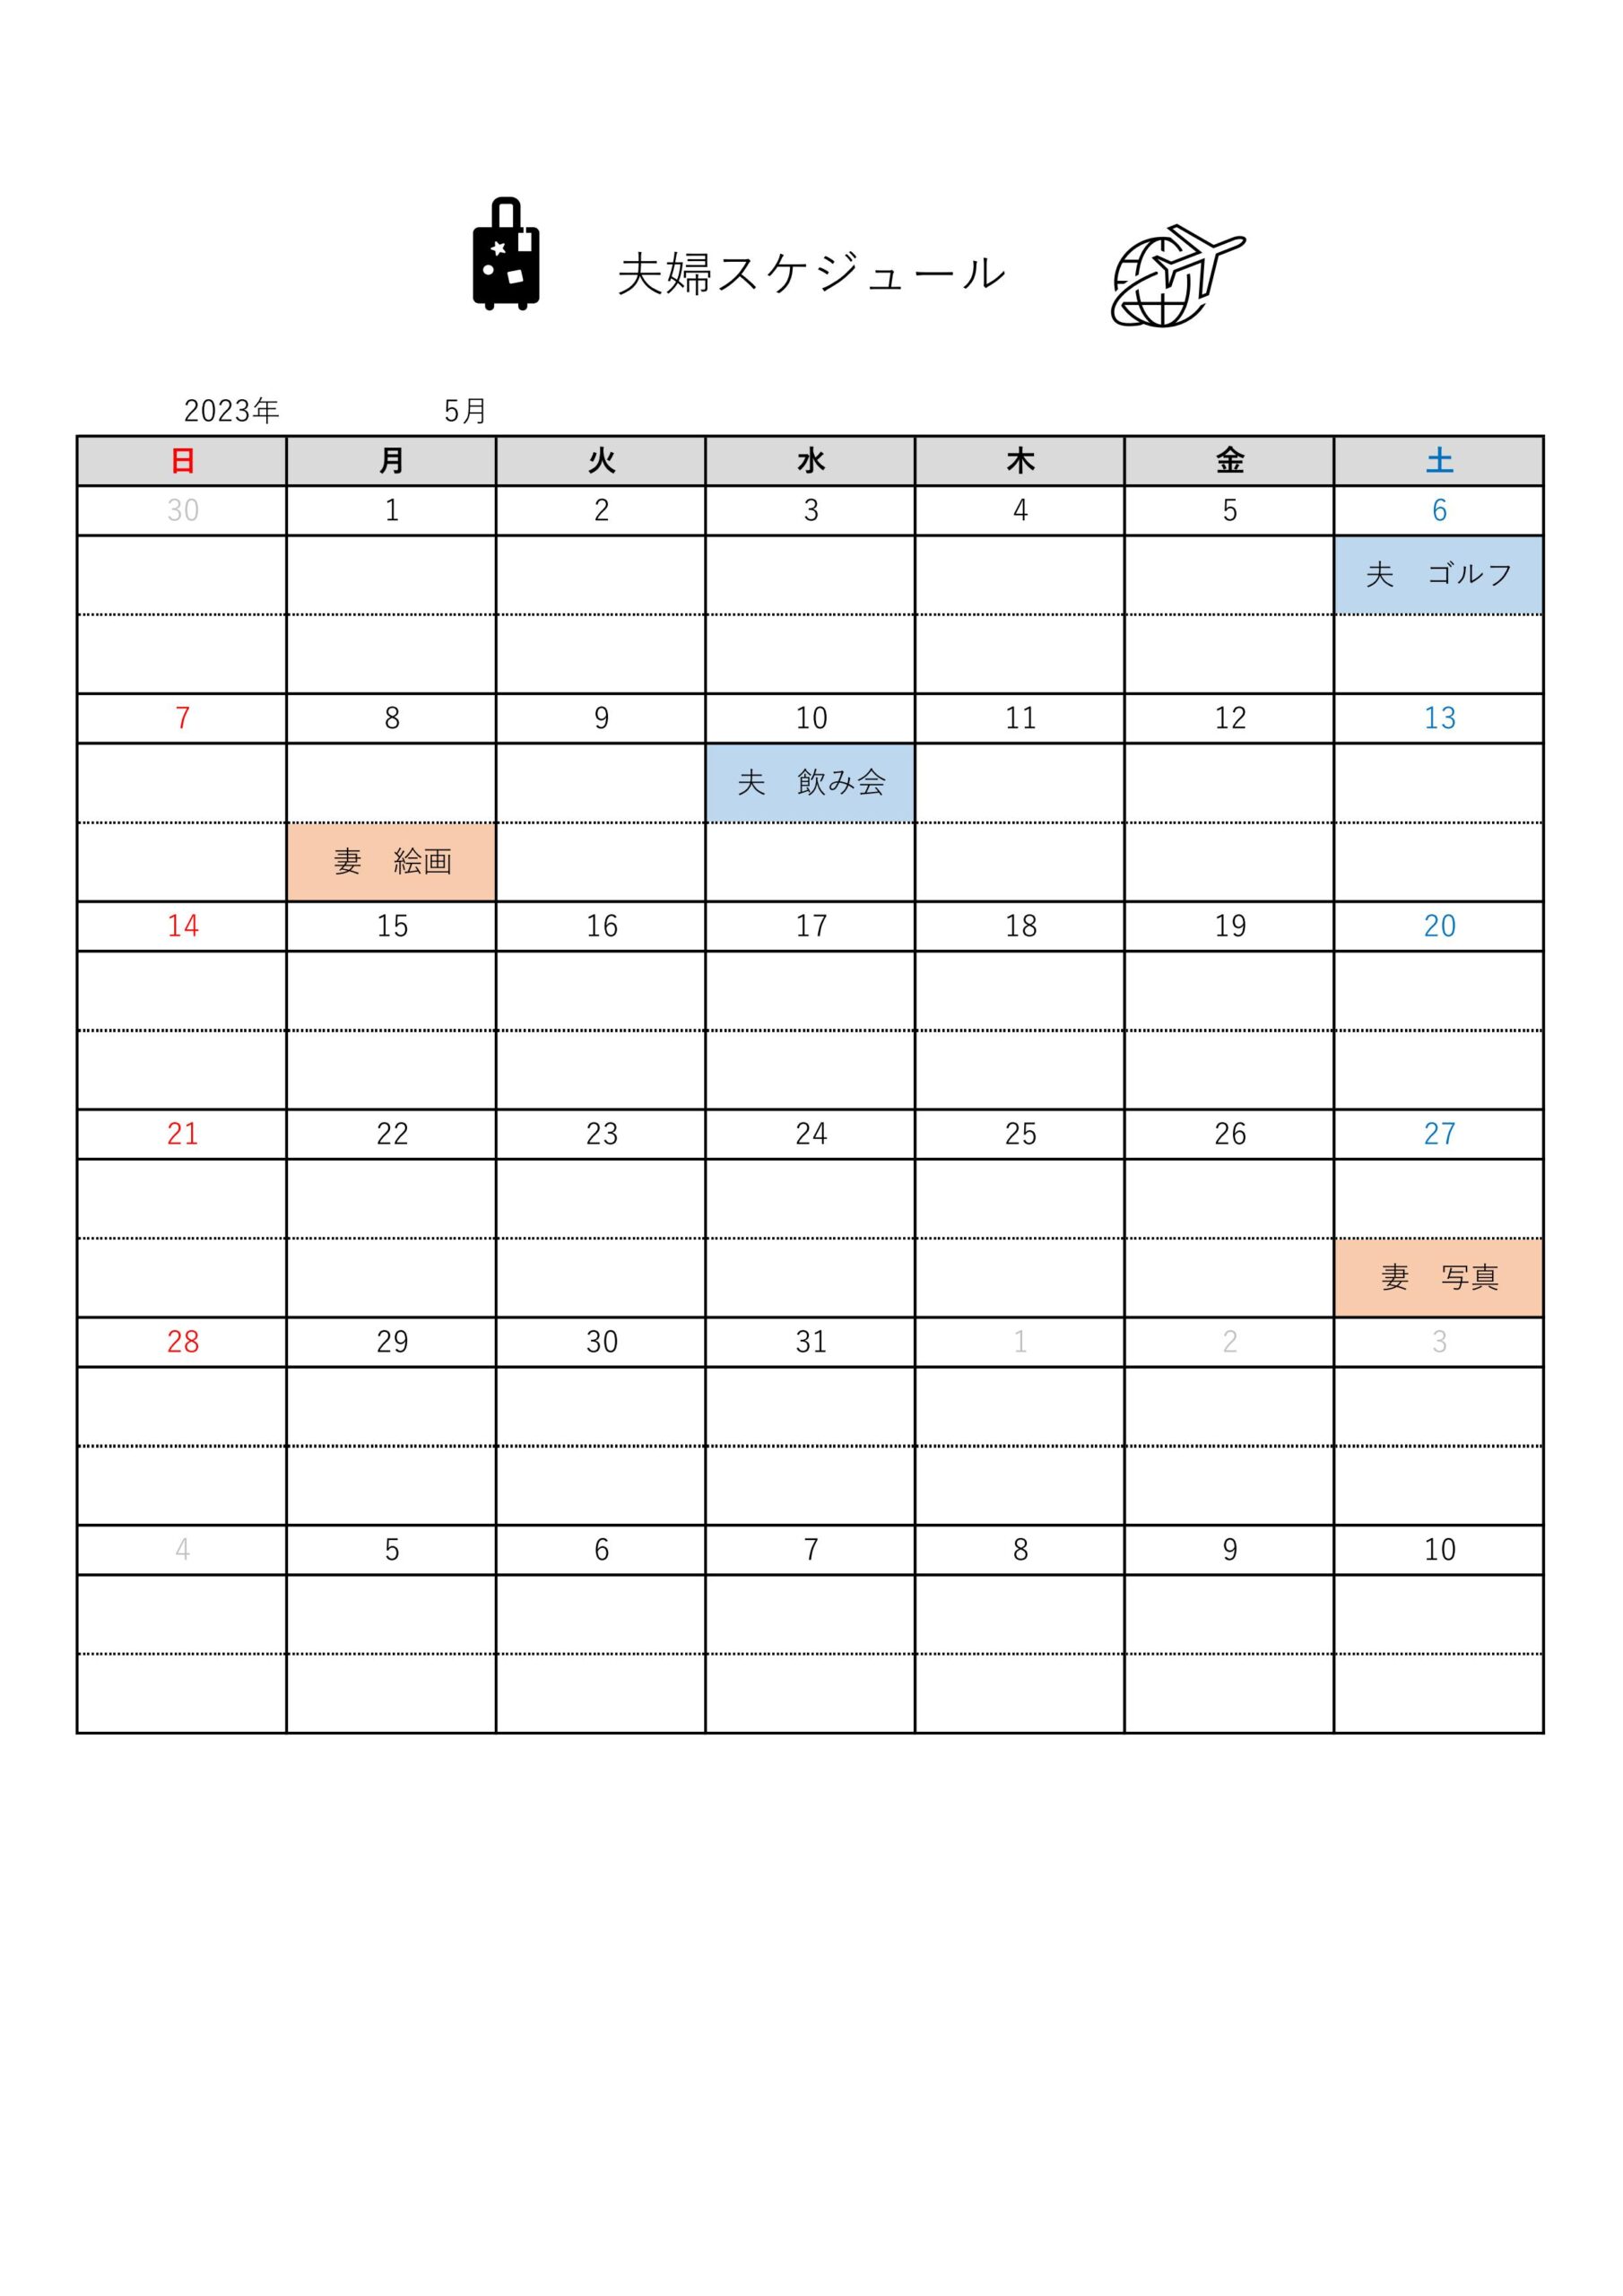 シンプルで見やすい夫婦スケジュール表のテンプレート「Excelは万年カレンダー」印刷して毎月の予定などを簡単に手書きで記入する事も可能です。一般家庭のリタイアした自由時間の多いシニア夫婦を想定して作成しましたが、簡易的な予定合わせに